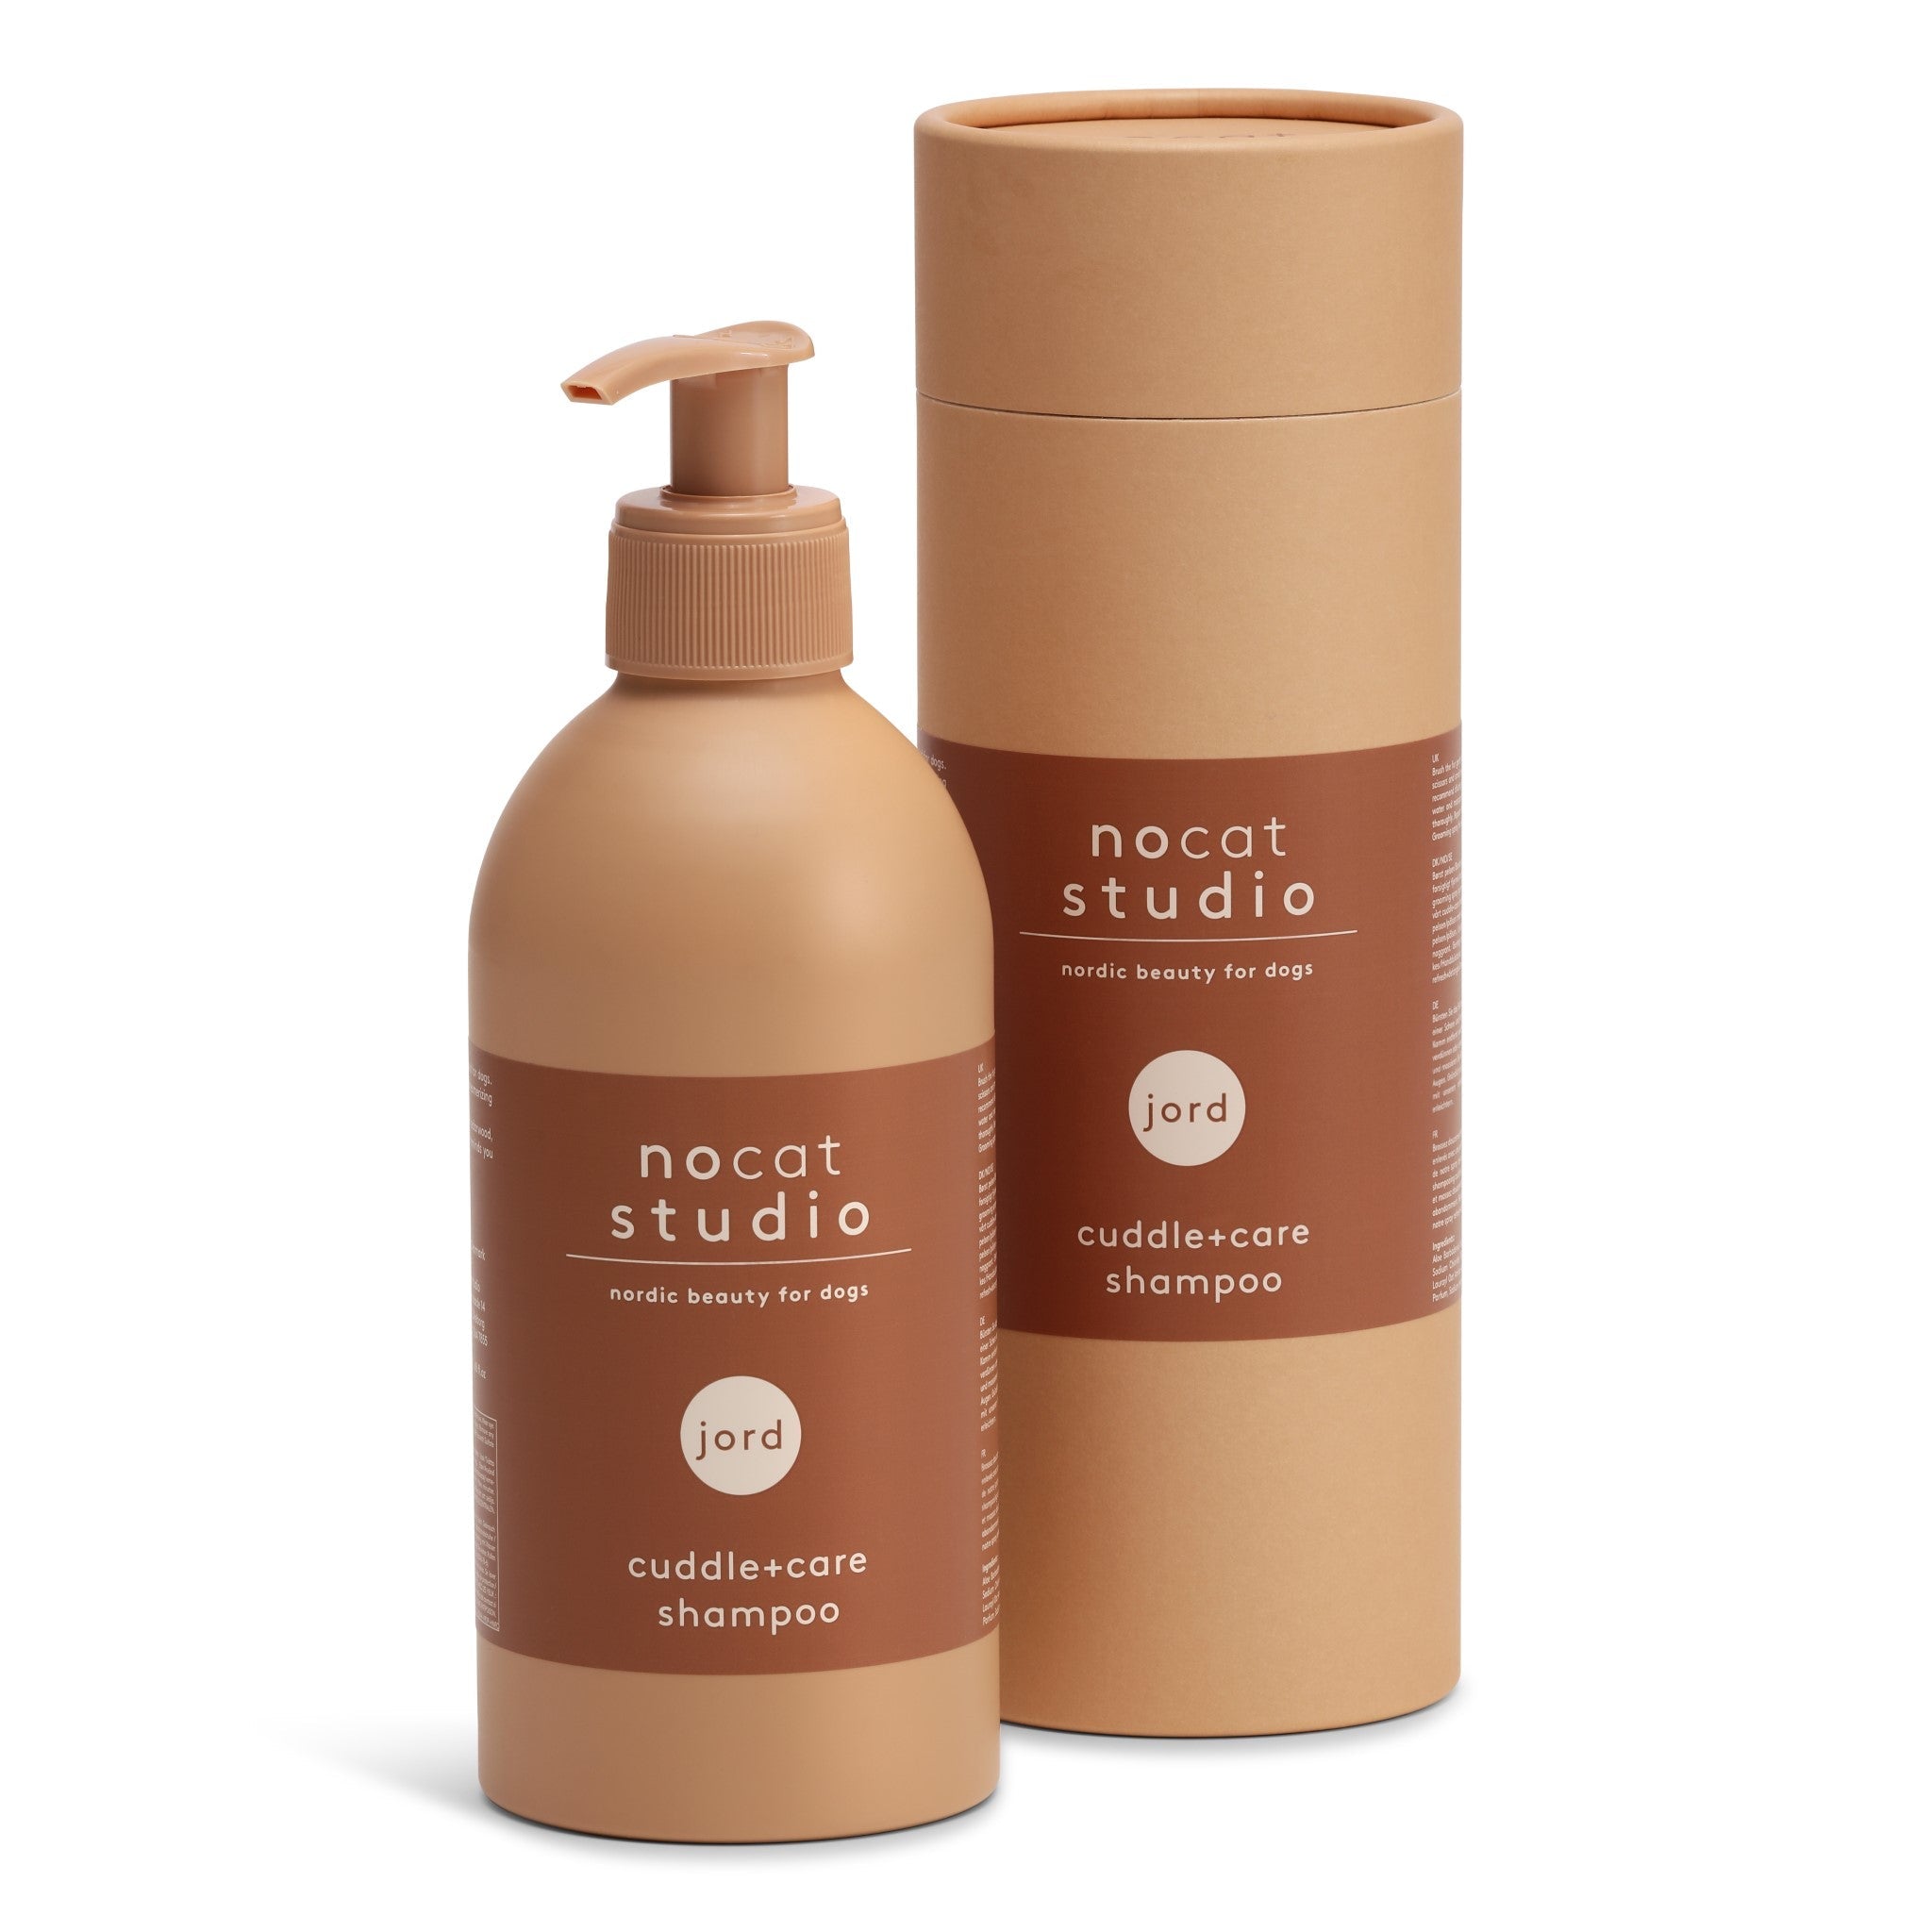 PNOWI01156S - Cuddle+care shampoo - JORD - 375 ml - Muotitassu